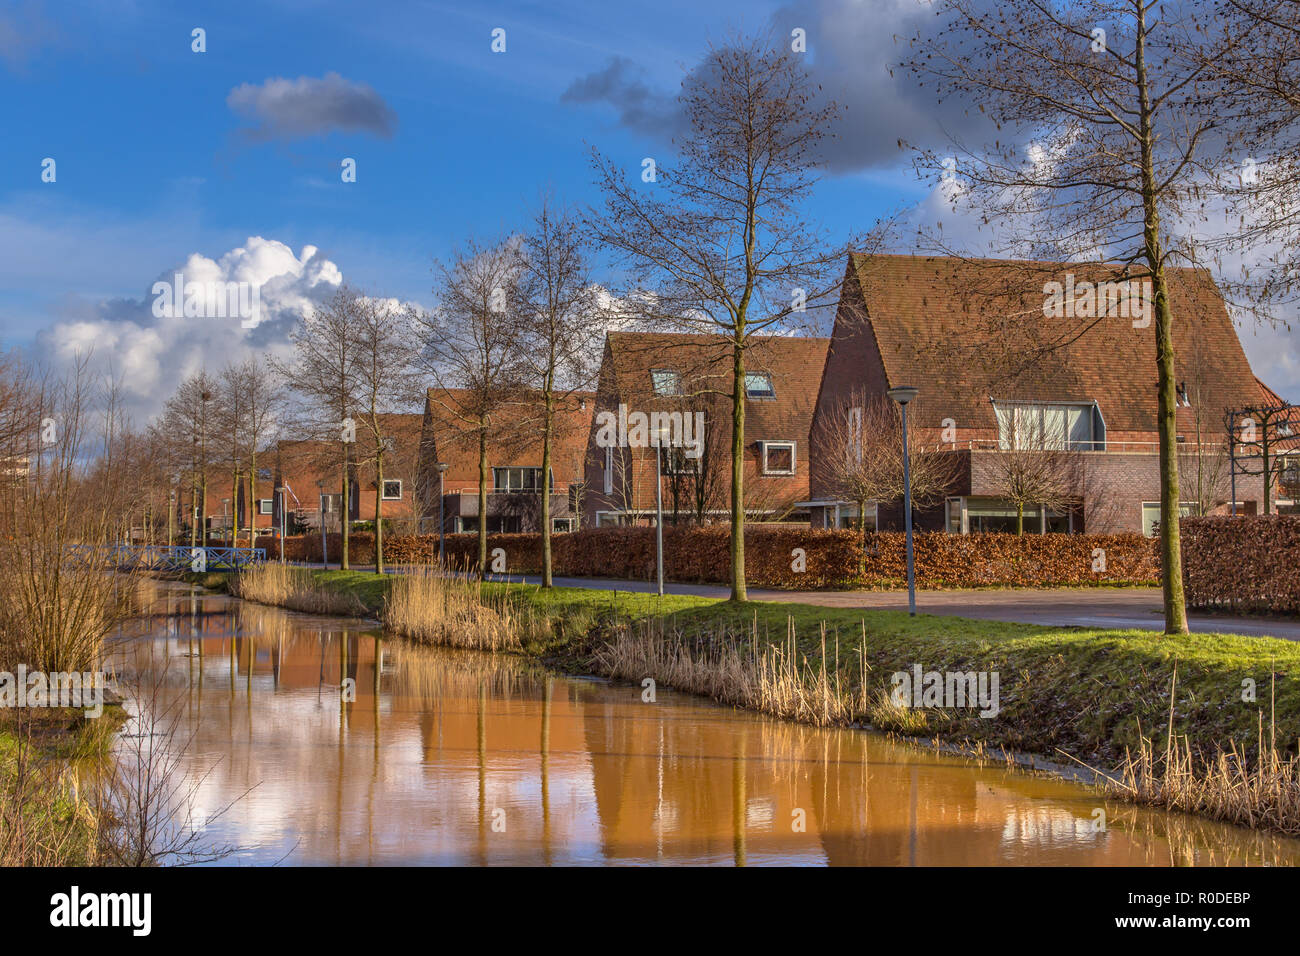 Maisons jumelées famille de classe moyenne dans une zone urbaine écologique naturelle en hiver, Groningen, Pays-Bas Banque D'Images